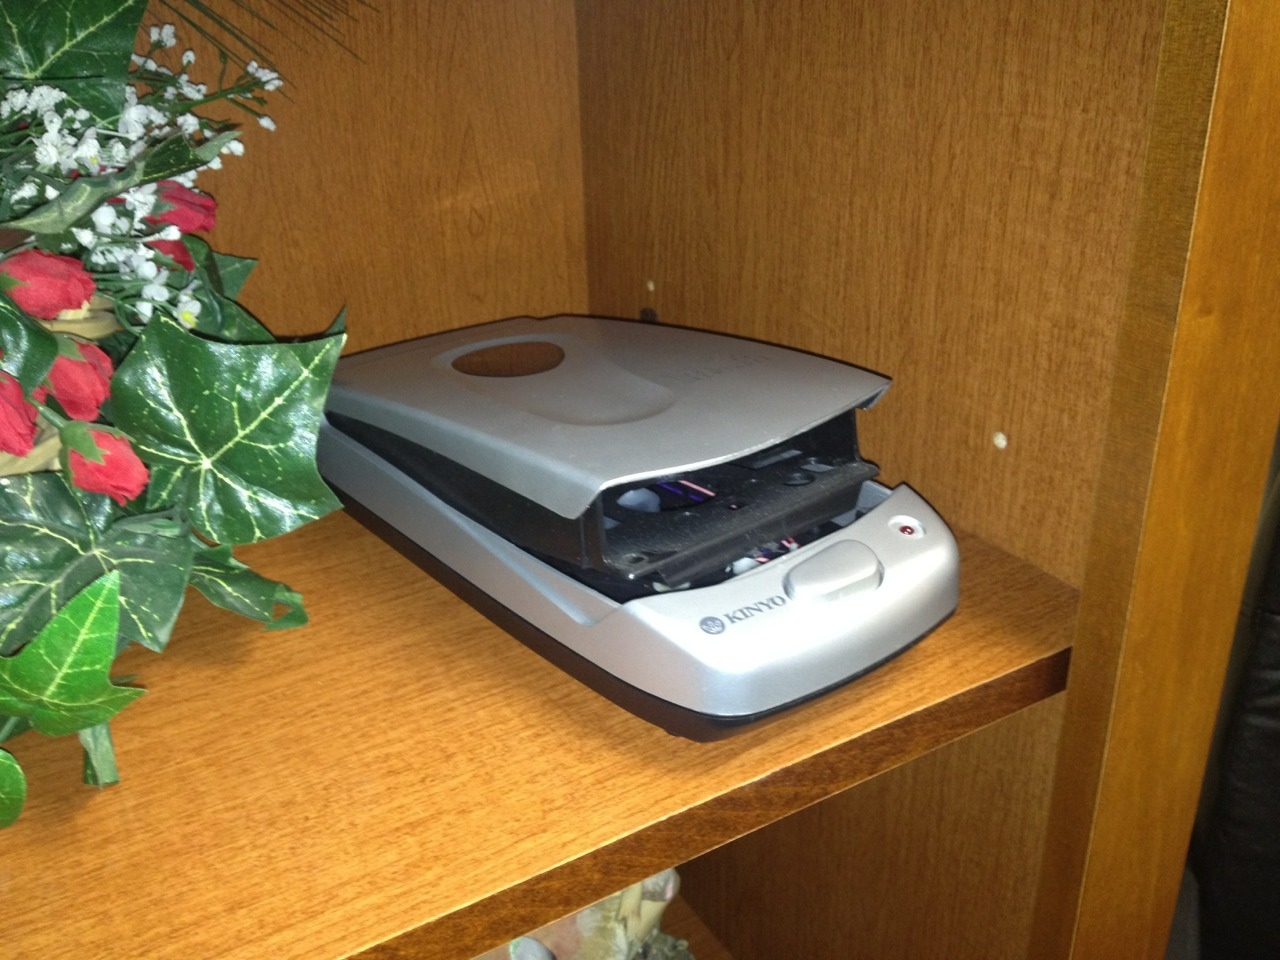 A VHS rewinder